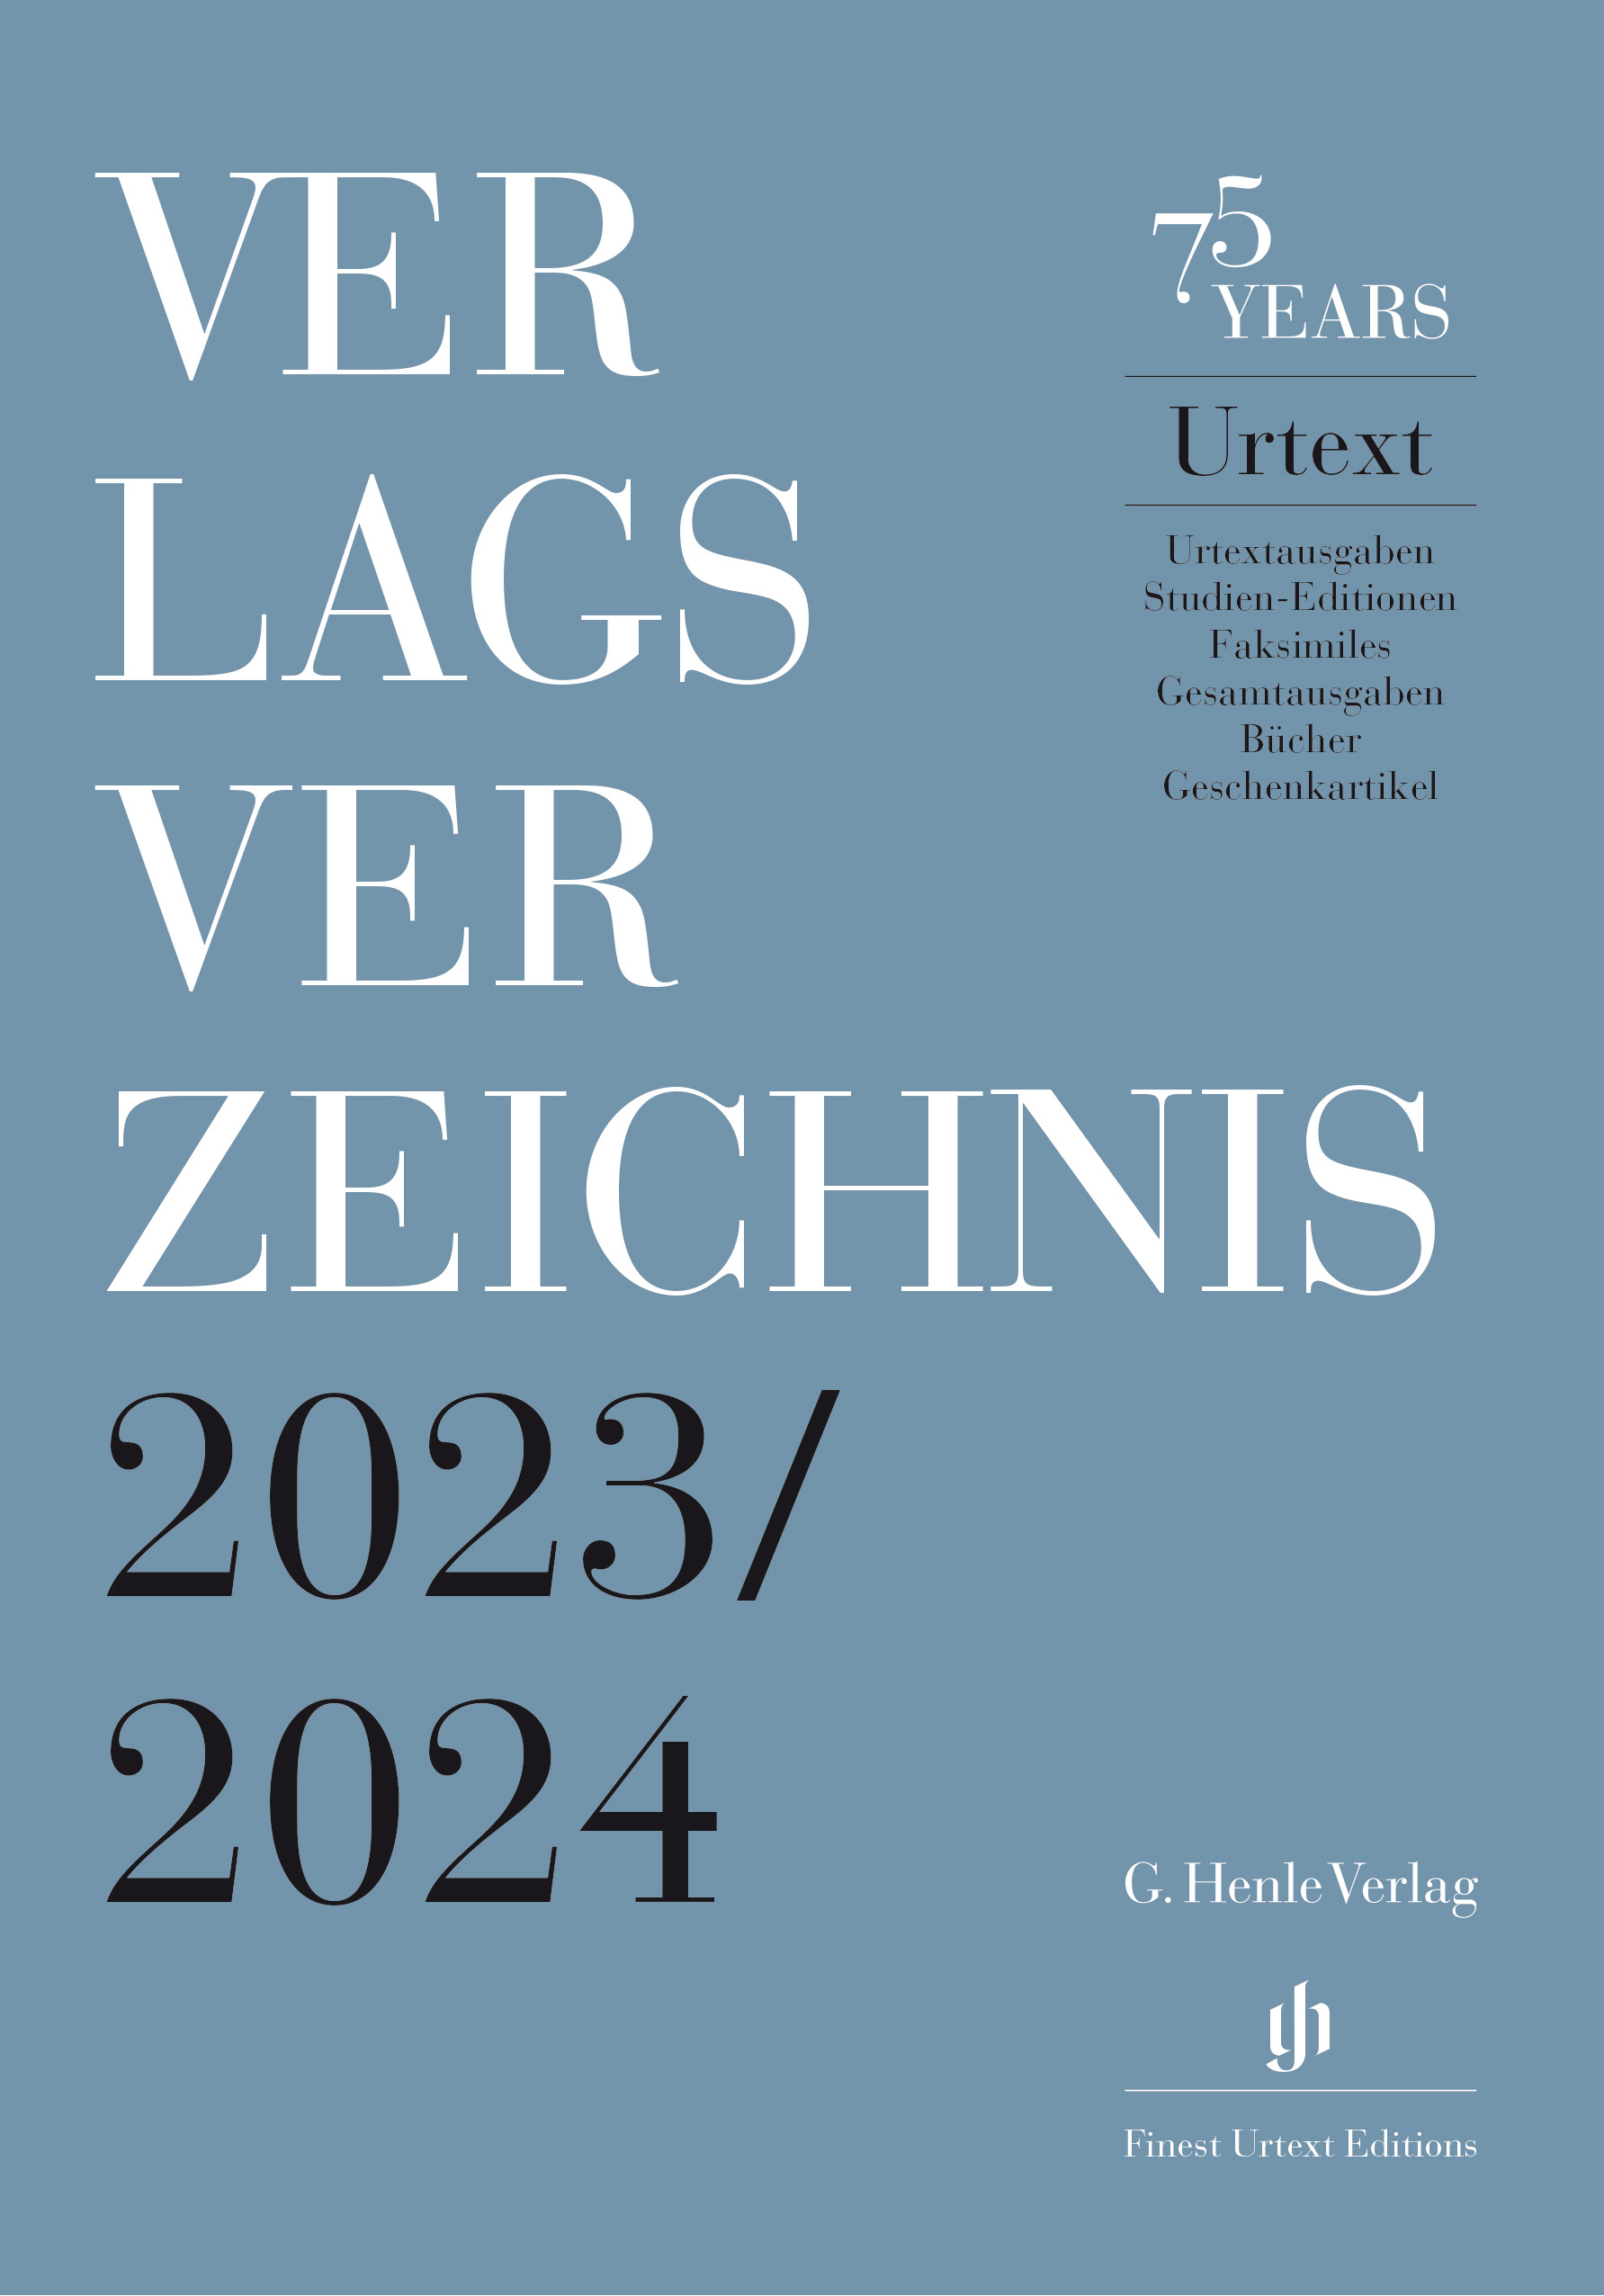 Verlagsverzeichnis 2023/2024, deutsch